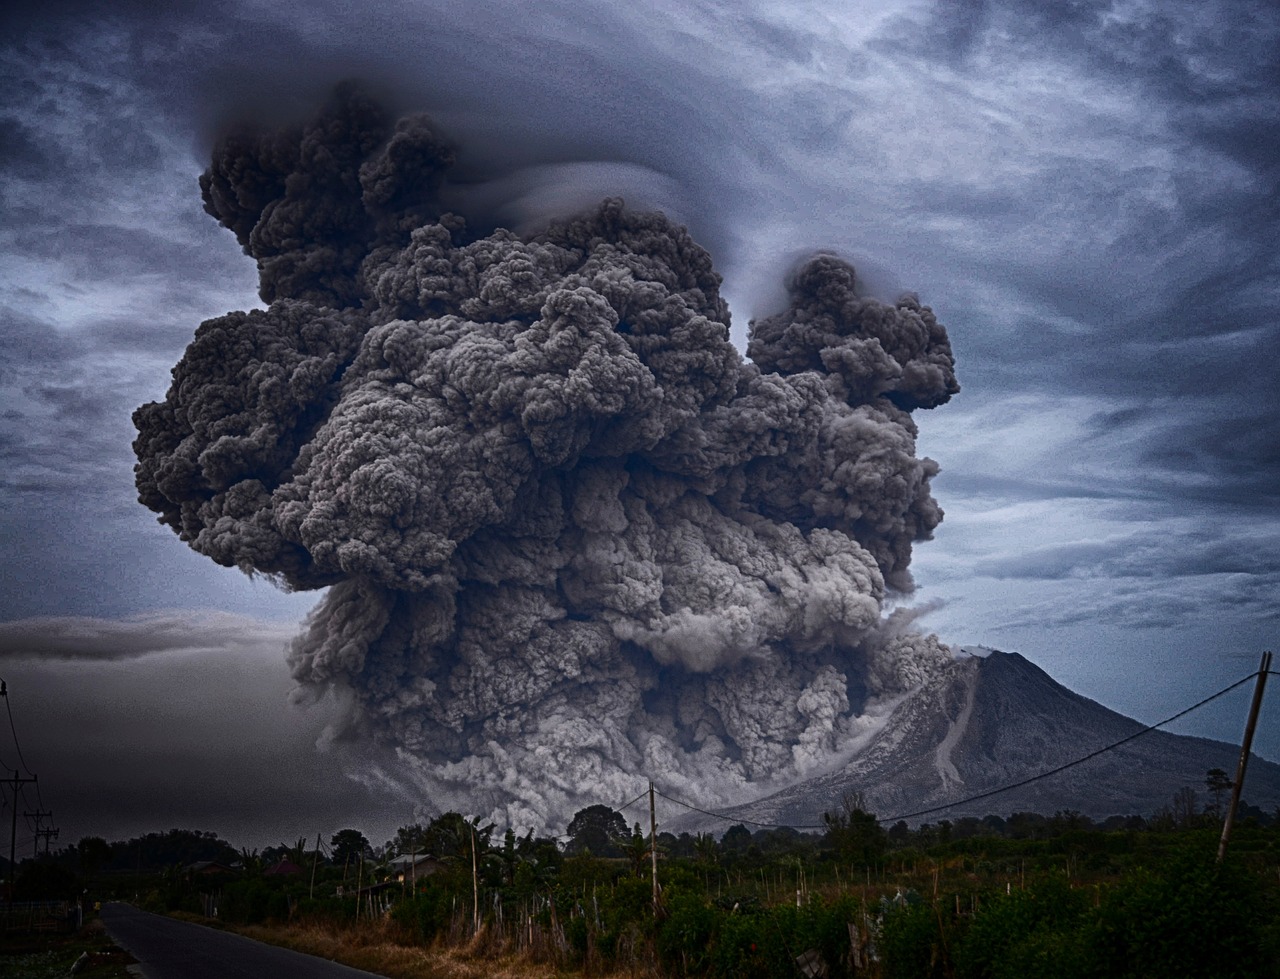 Siêu núi lửa bí ẩn của châu Âu đang chuẩn bị 'thức giấc' - Ảnh 3.